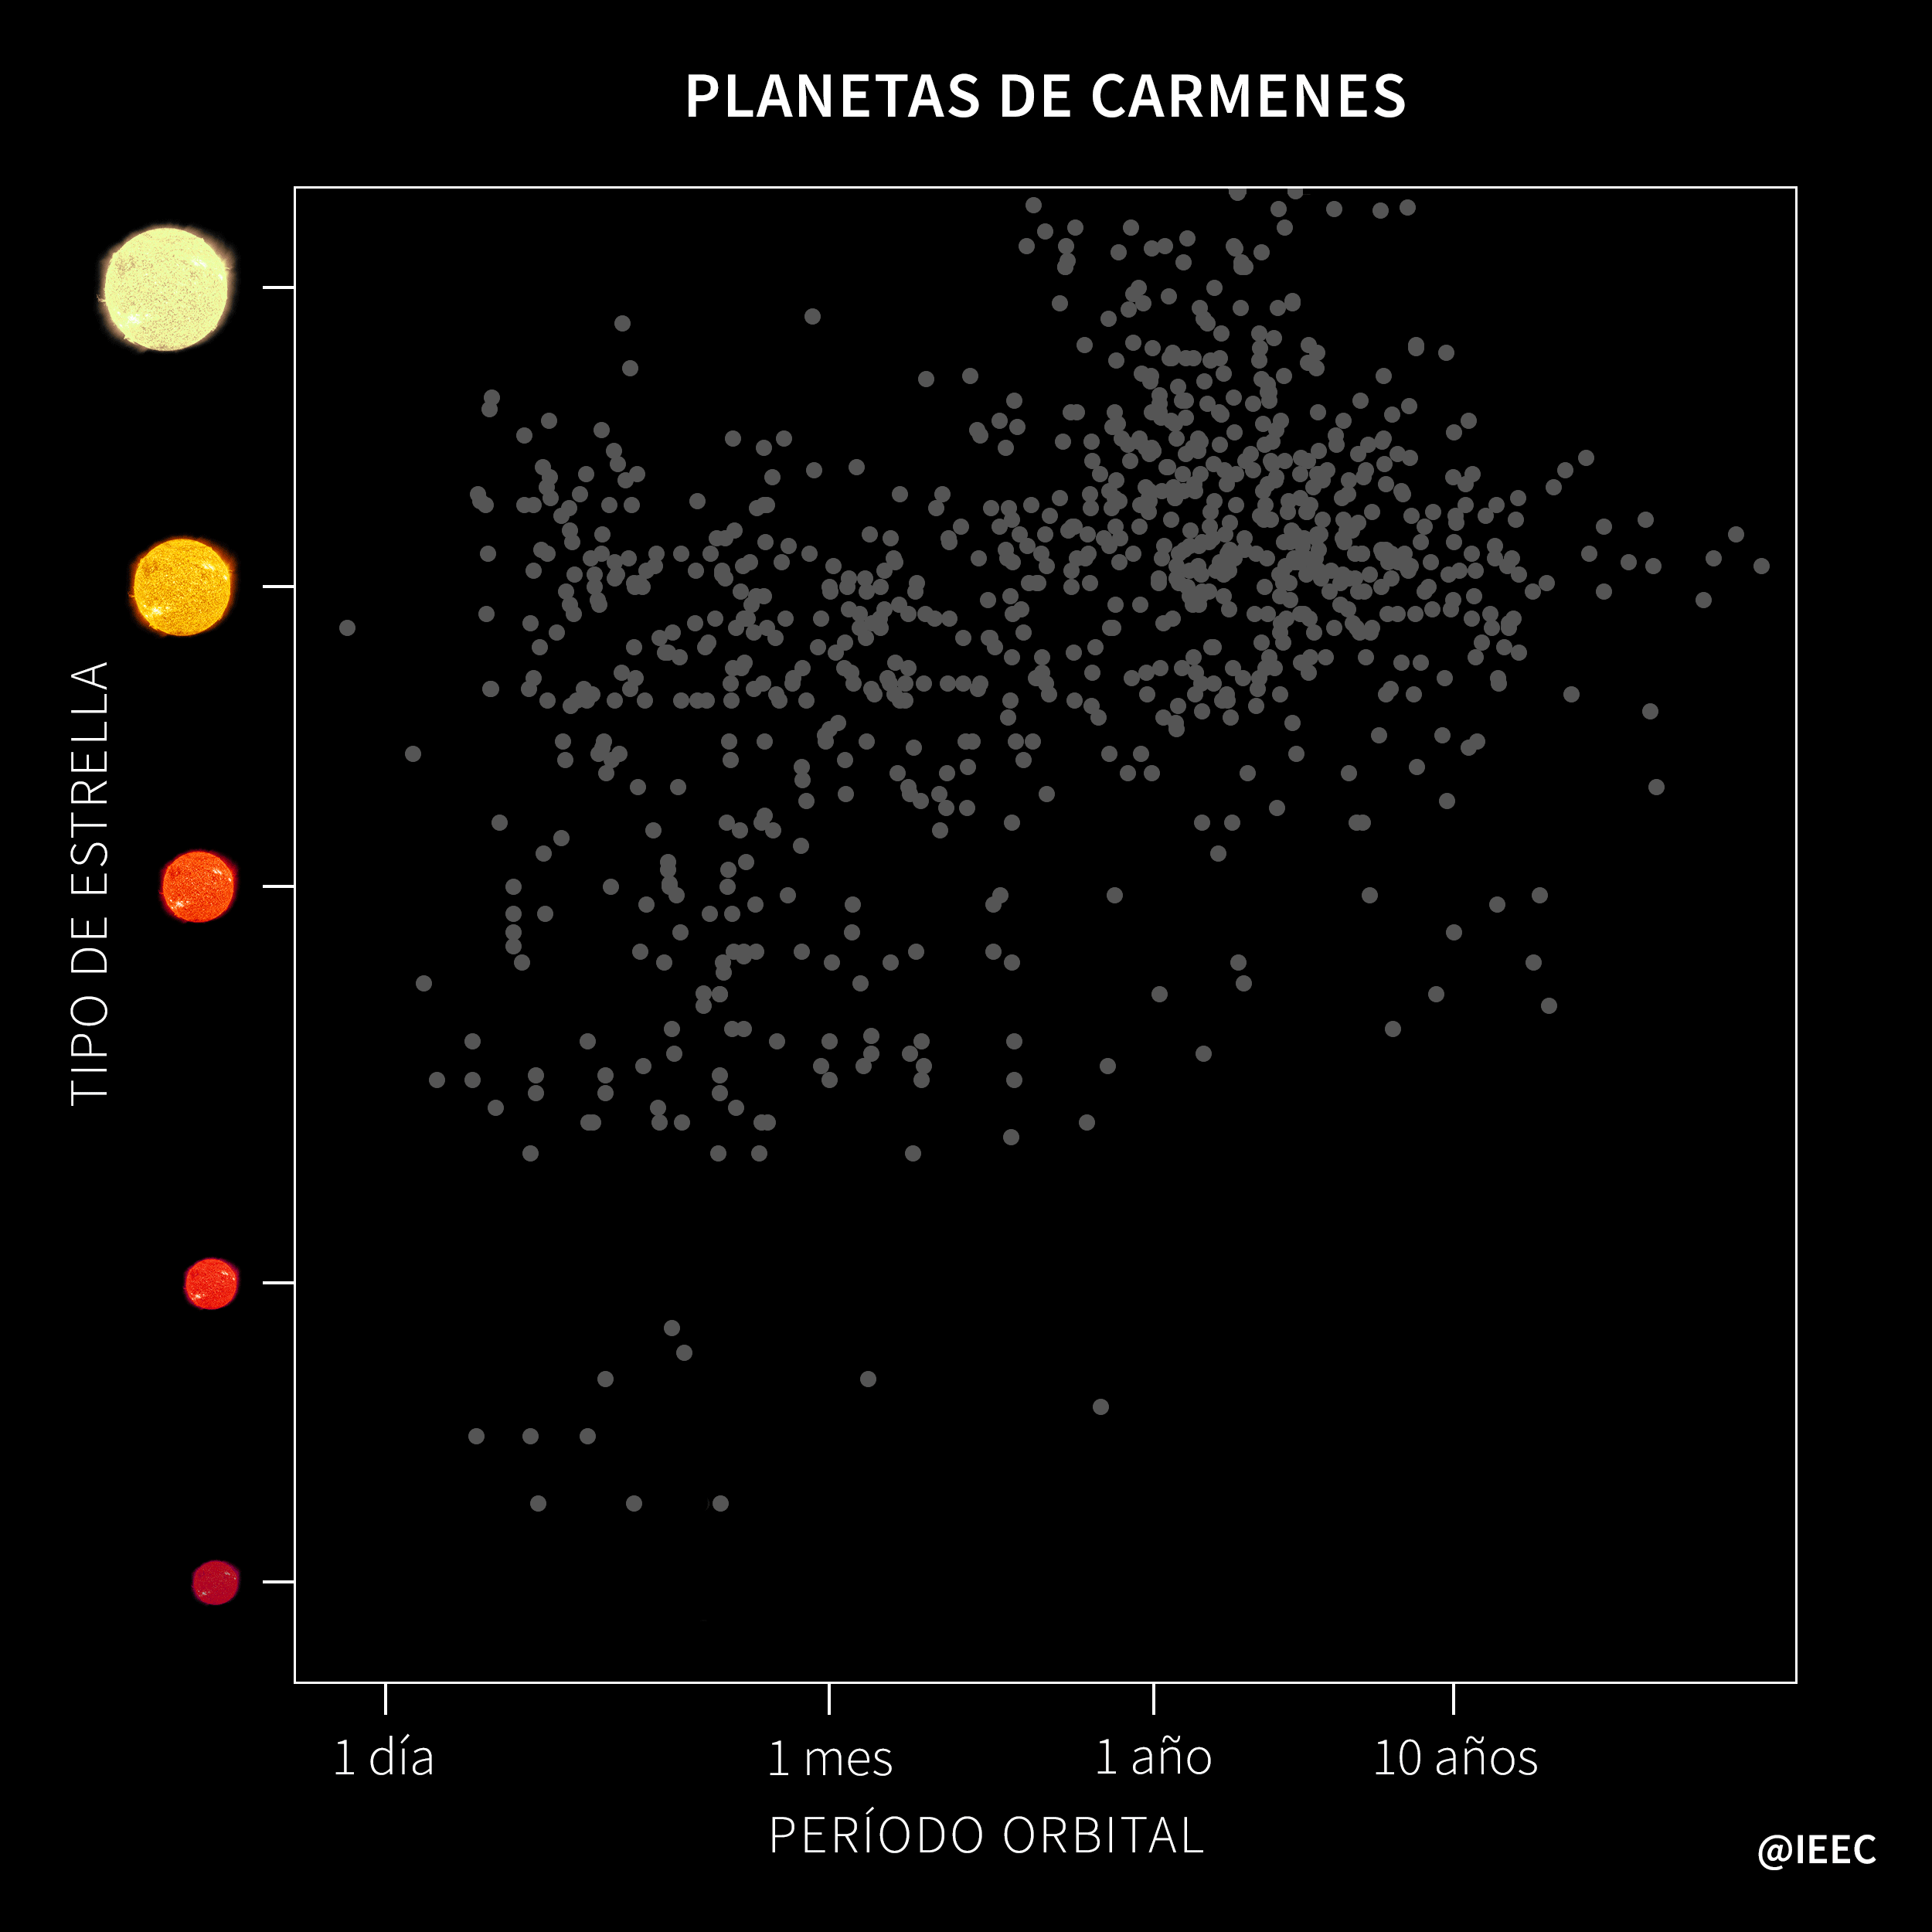 Visualización de planetas de Carmenes y período orbital, fuente IEEC